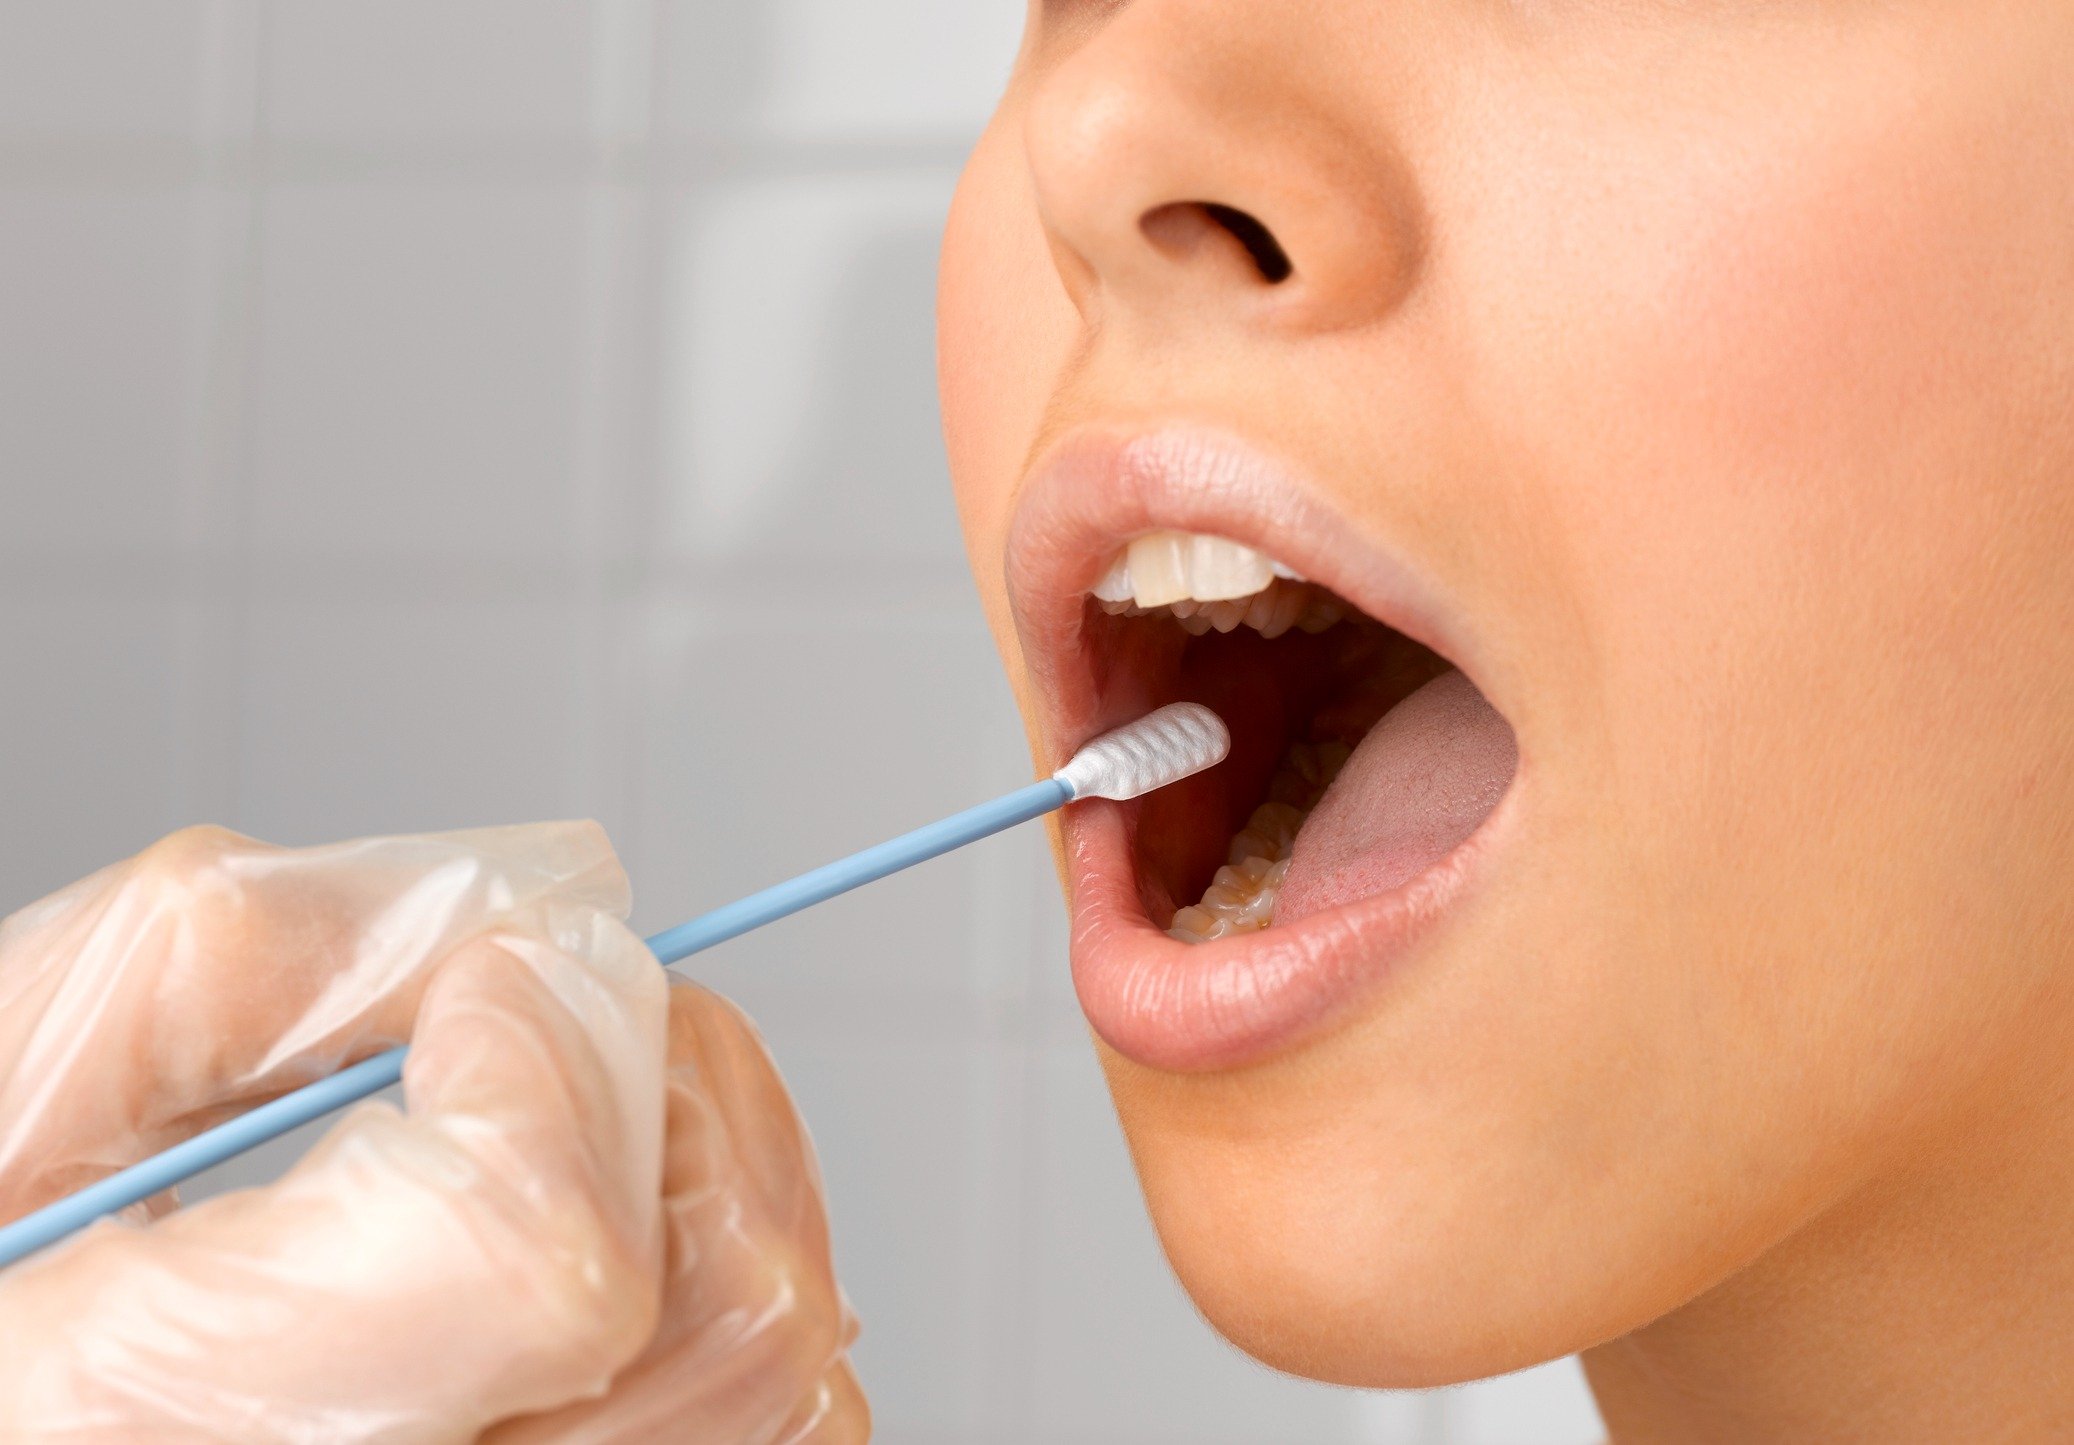 Foto mostra teste de saliva sendo realizado na boca de mulher com um cotonete largo - Metrópoles - DNA açúcar câncer